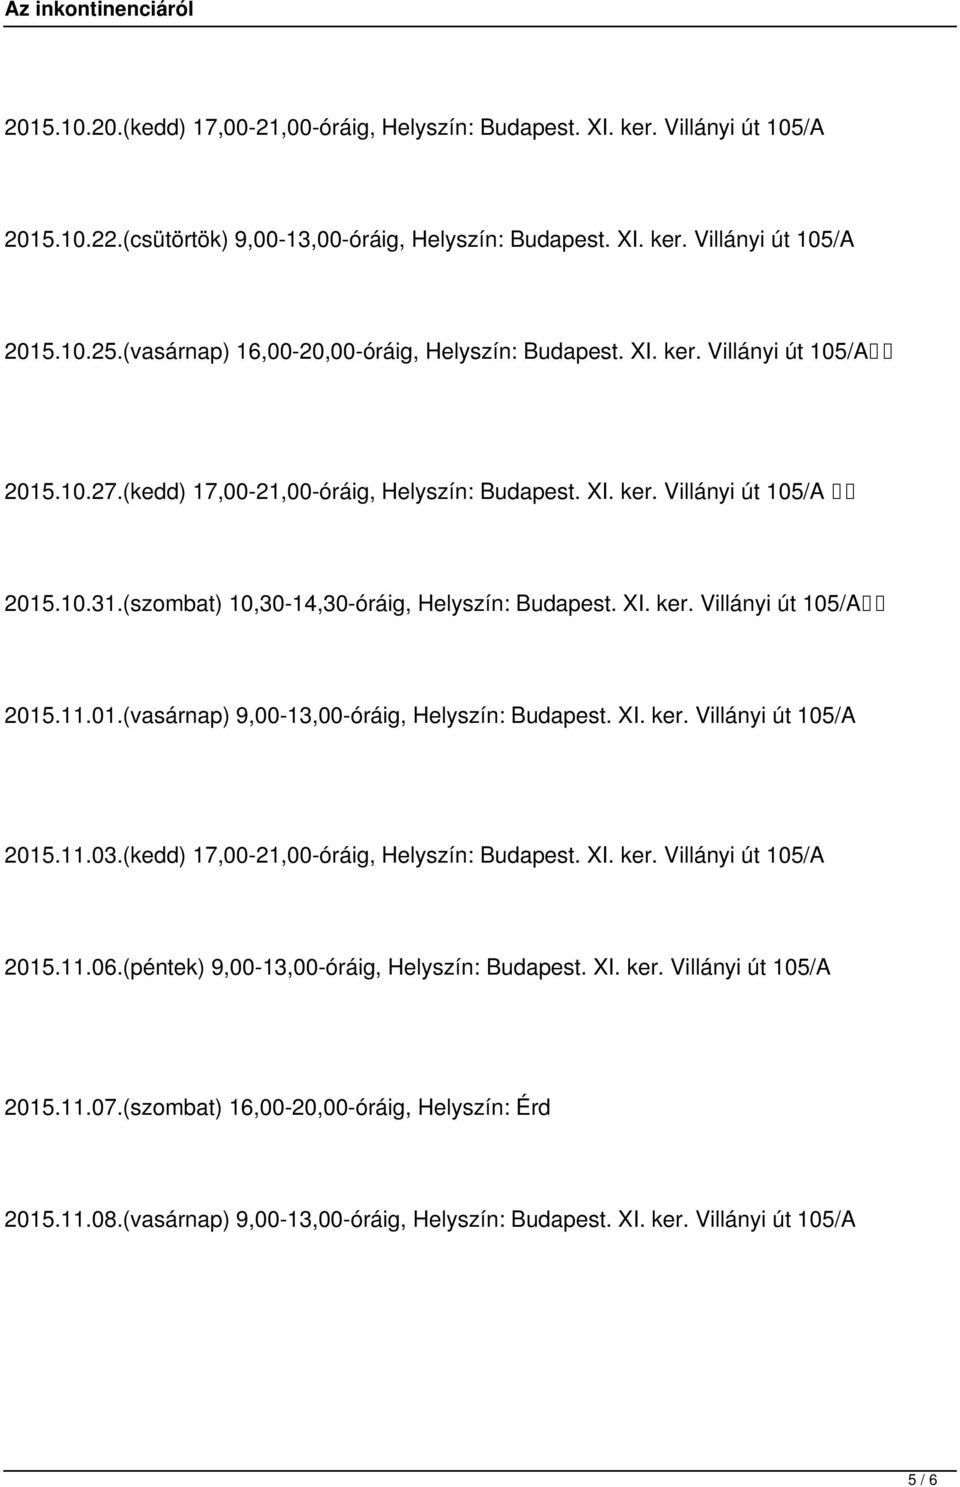 (szombat) 10,30-14,30-óráig, Helyszín: Budapest. XI. ker. Villányi út 105/A 2015.11.01.(vasárnap) 9,00-13,00-óráig, Helyszín: Budapest. XI. ker. Villányi út 105/A 2015.11.03.